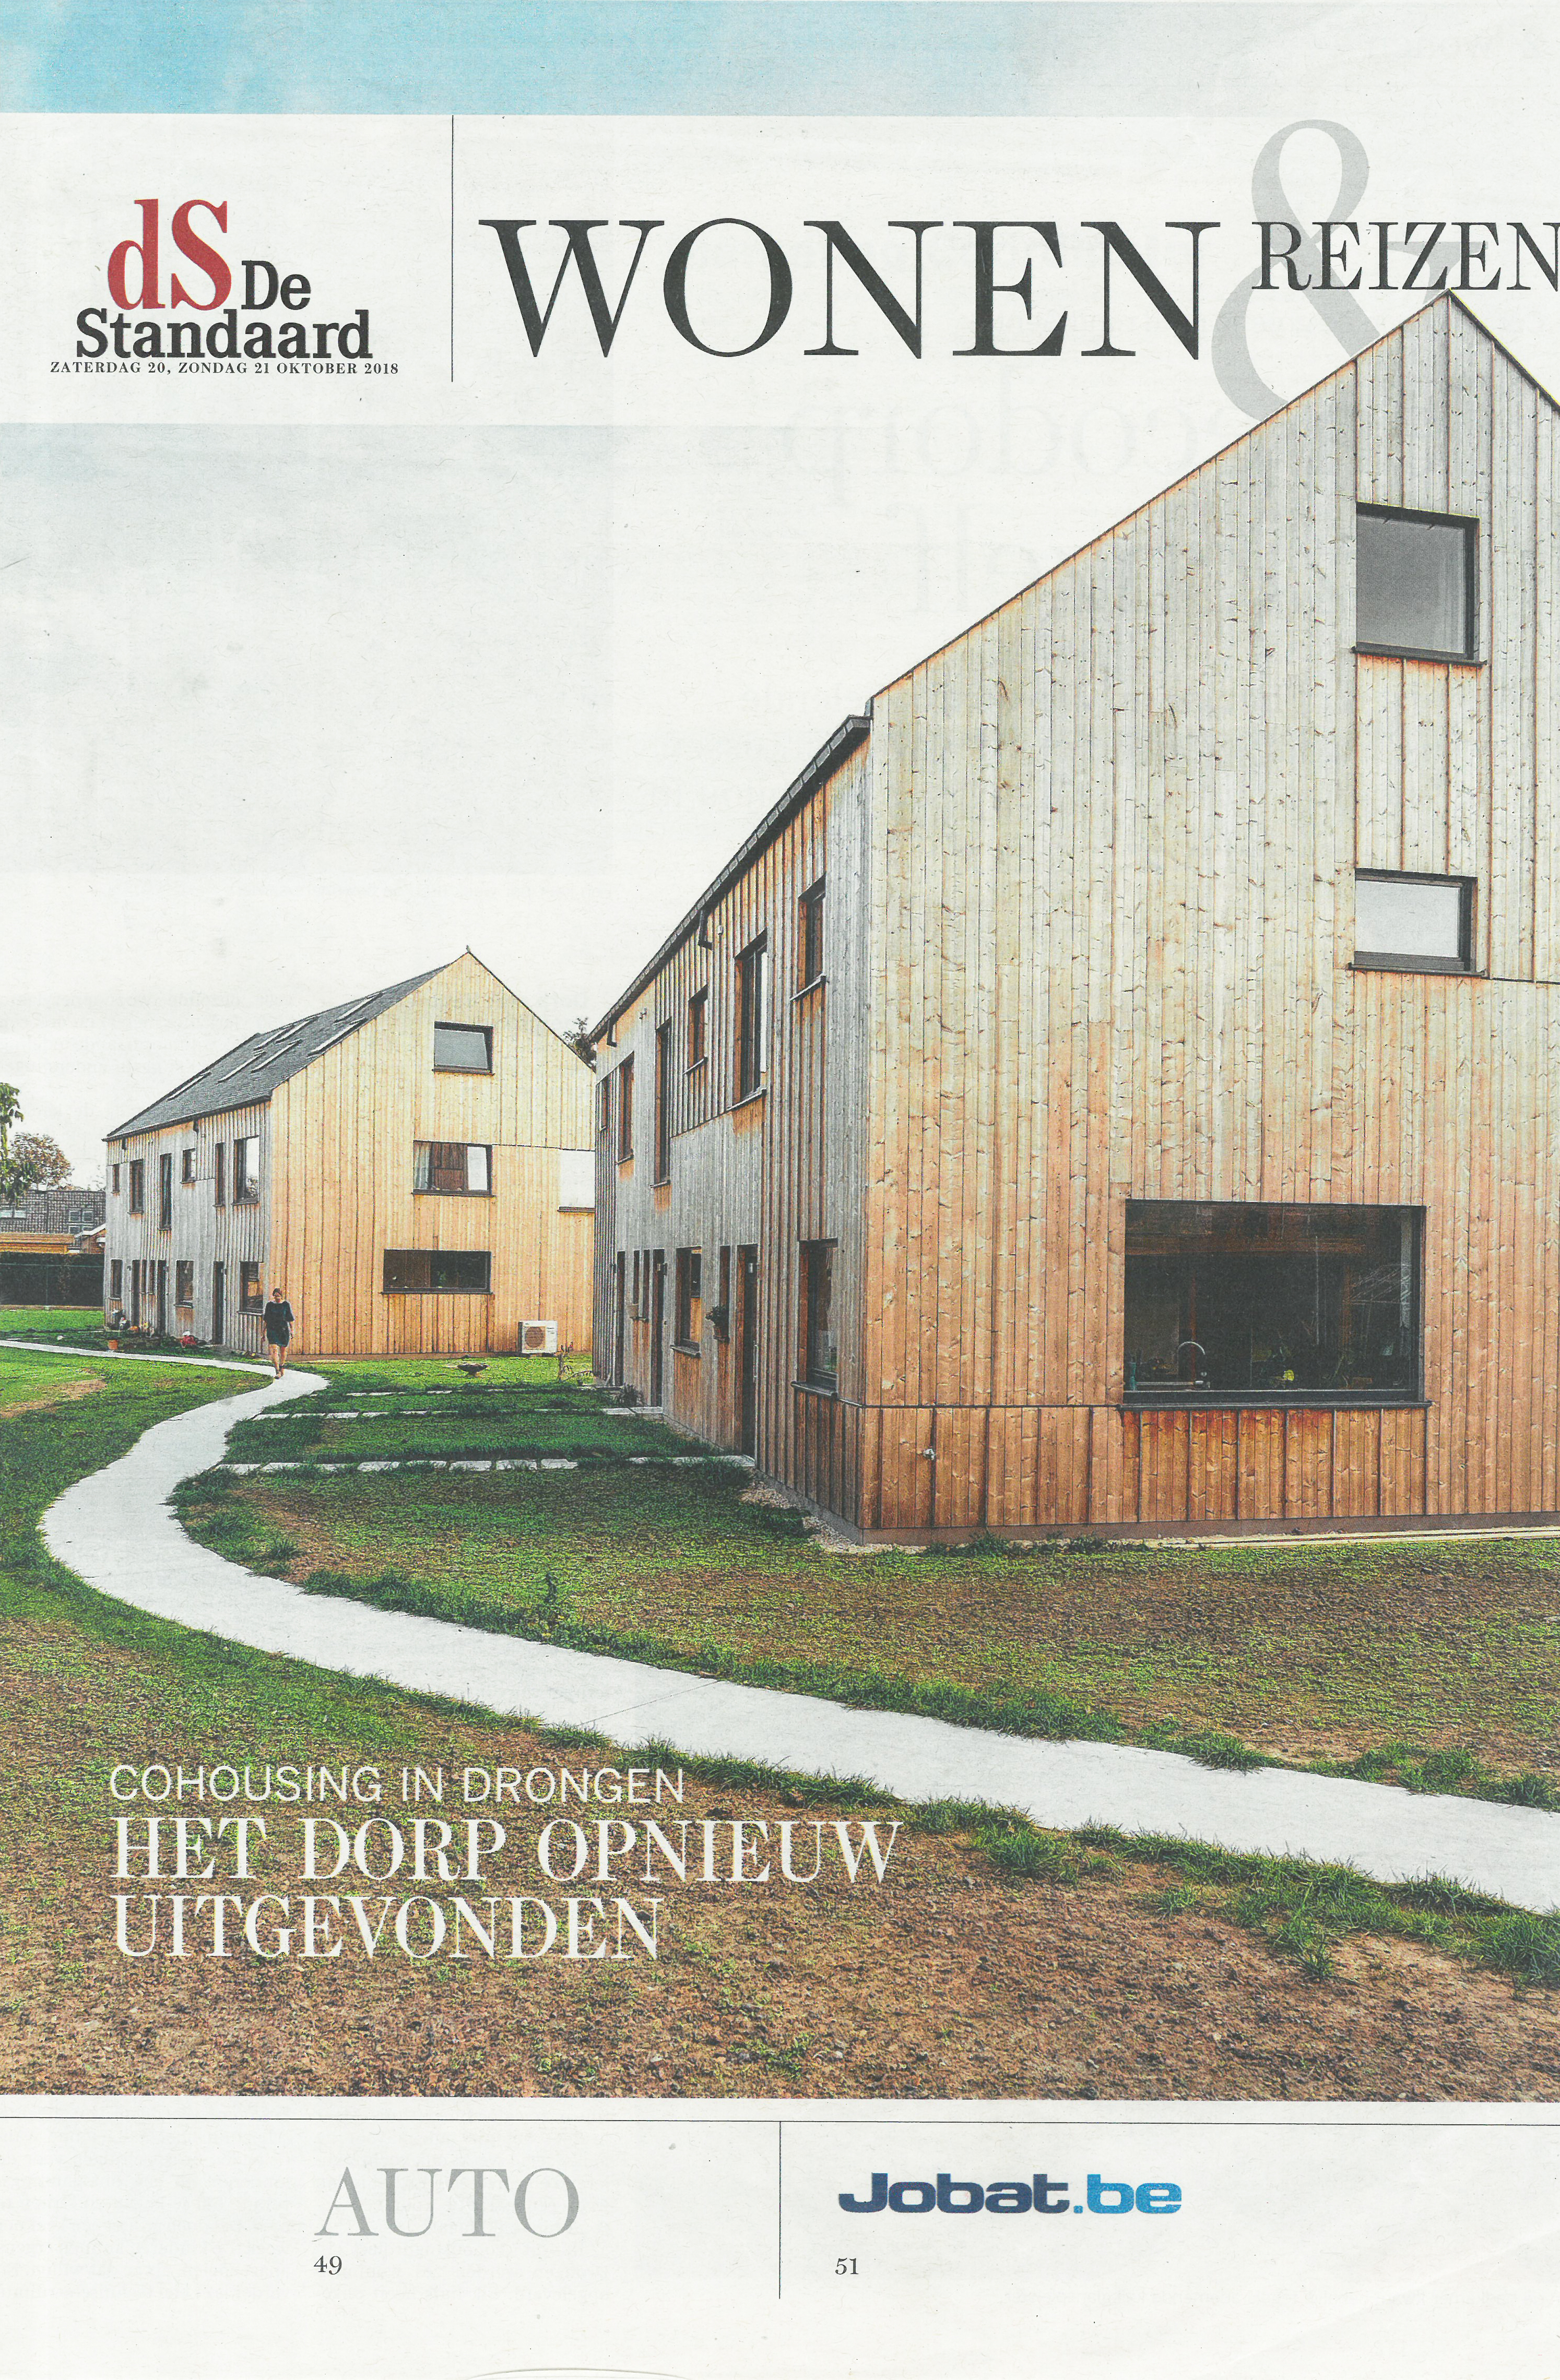 Co-housing project te Drongen: een ecodorp op zich